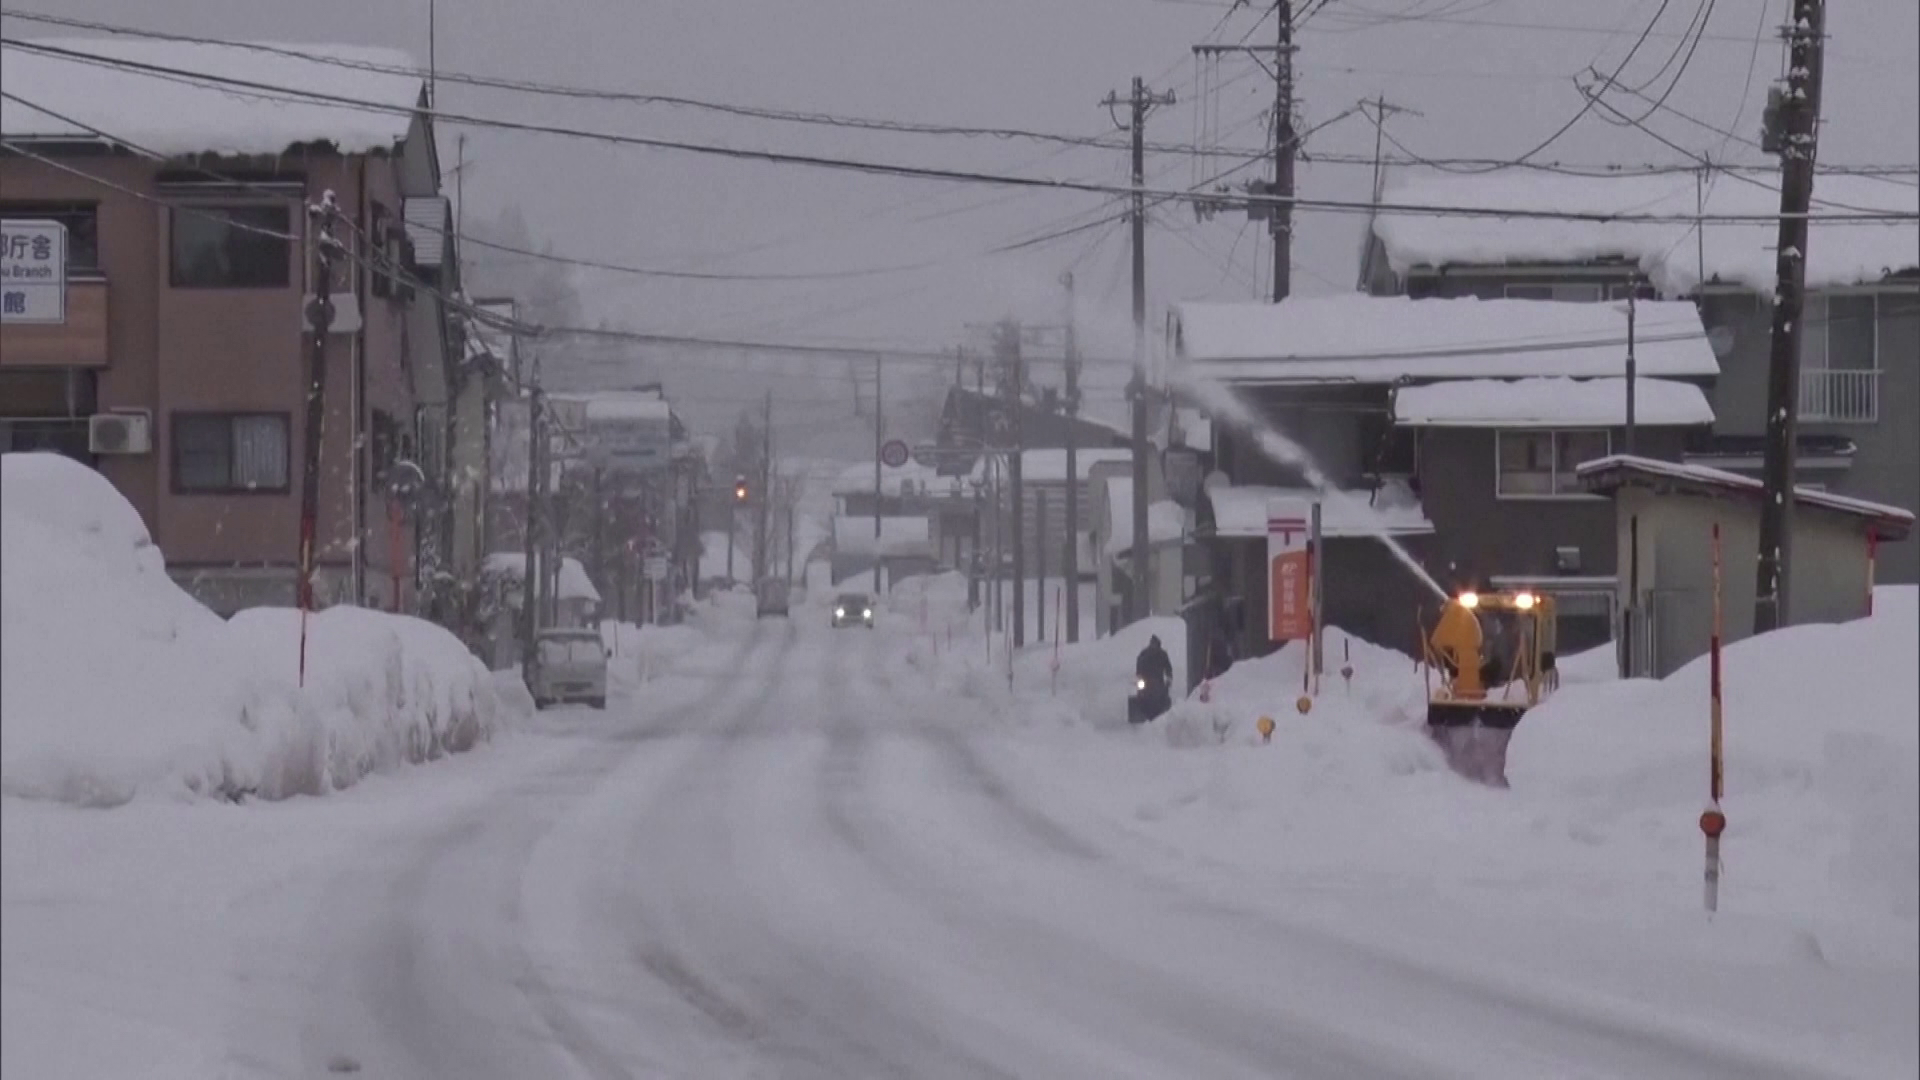 Sok halottja van a Japánt sújtó téli időjárásnak